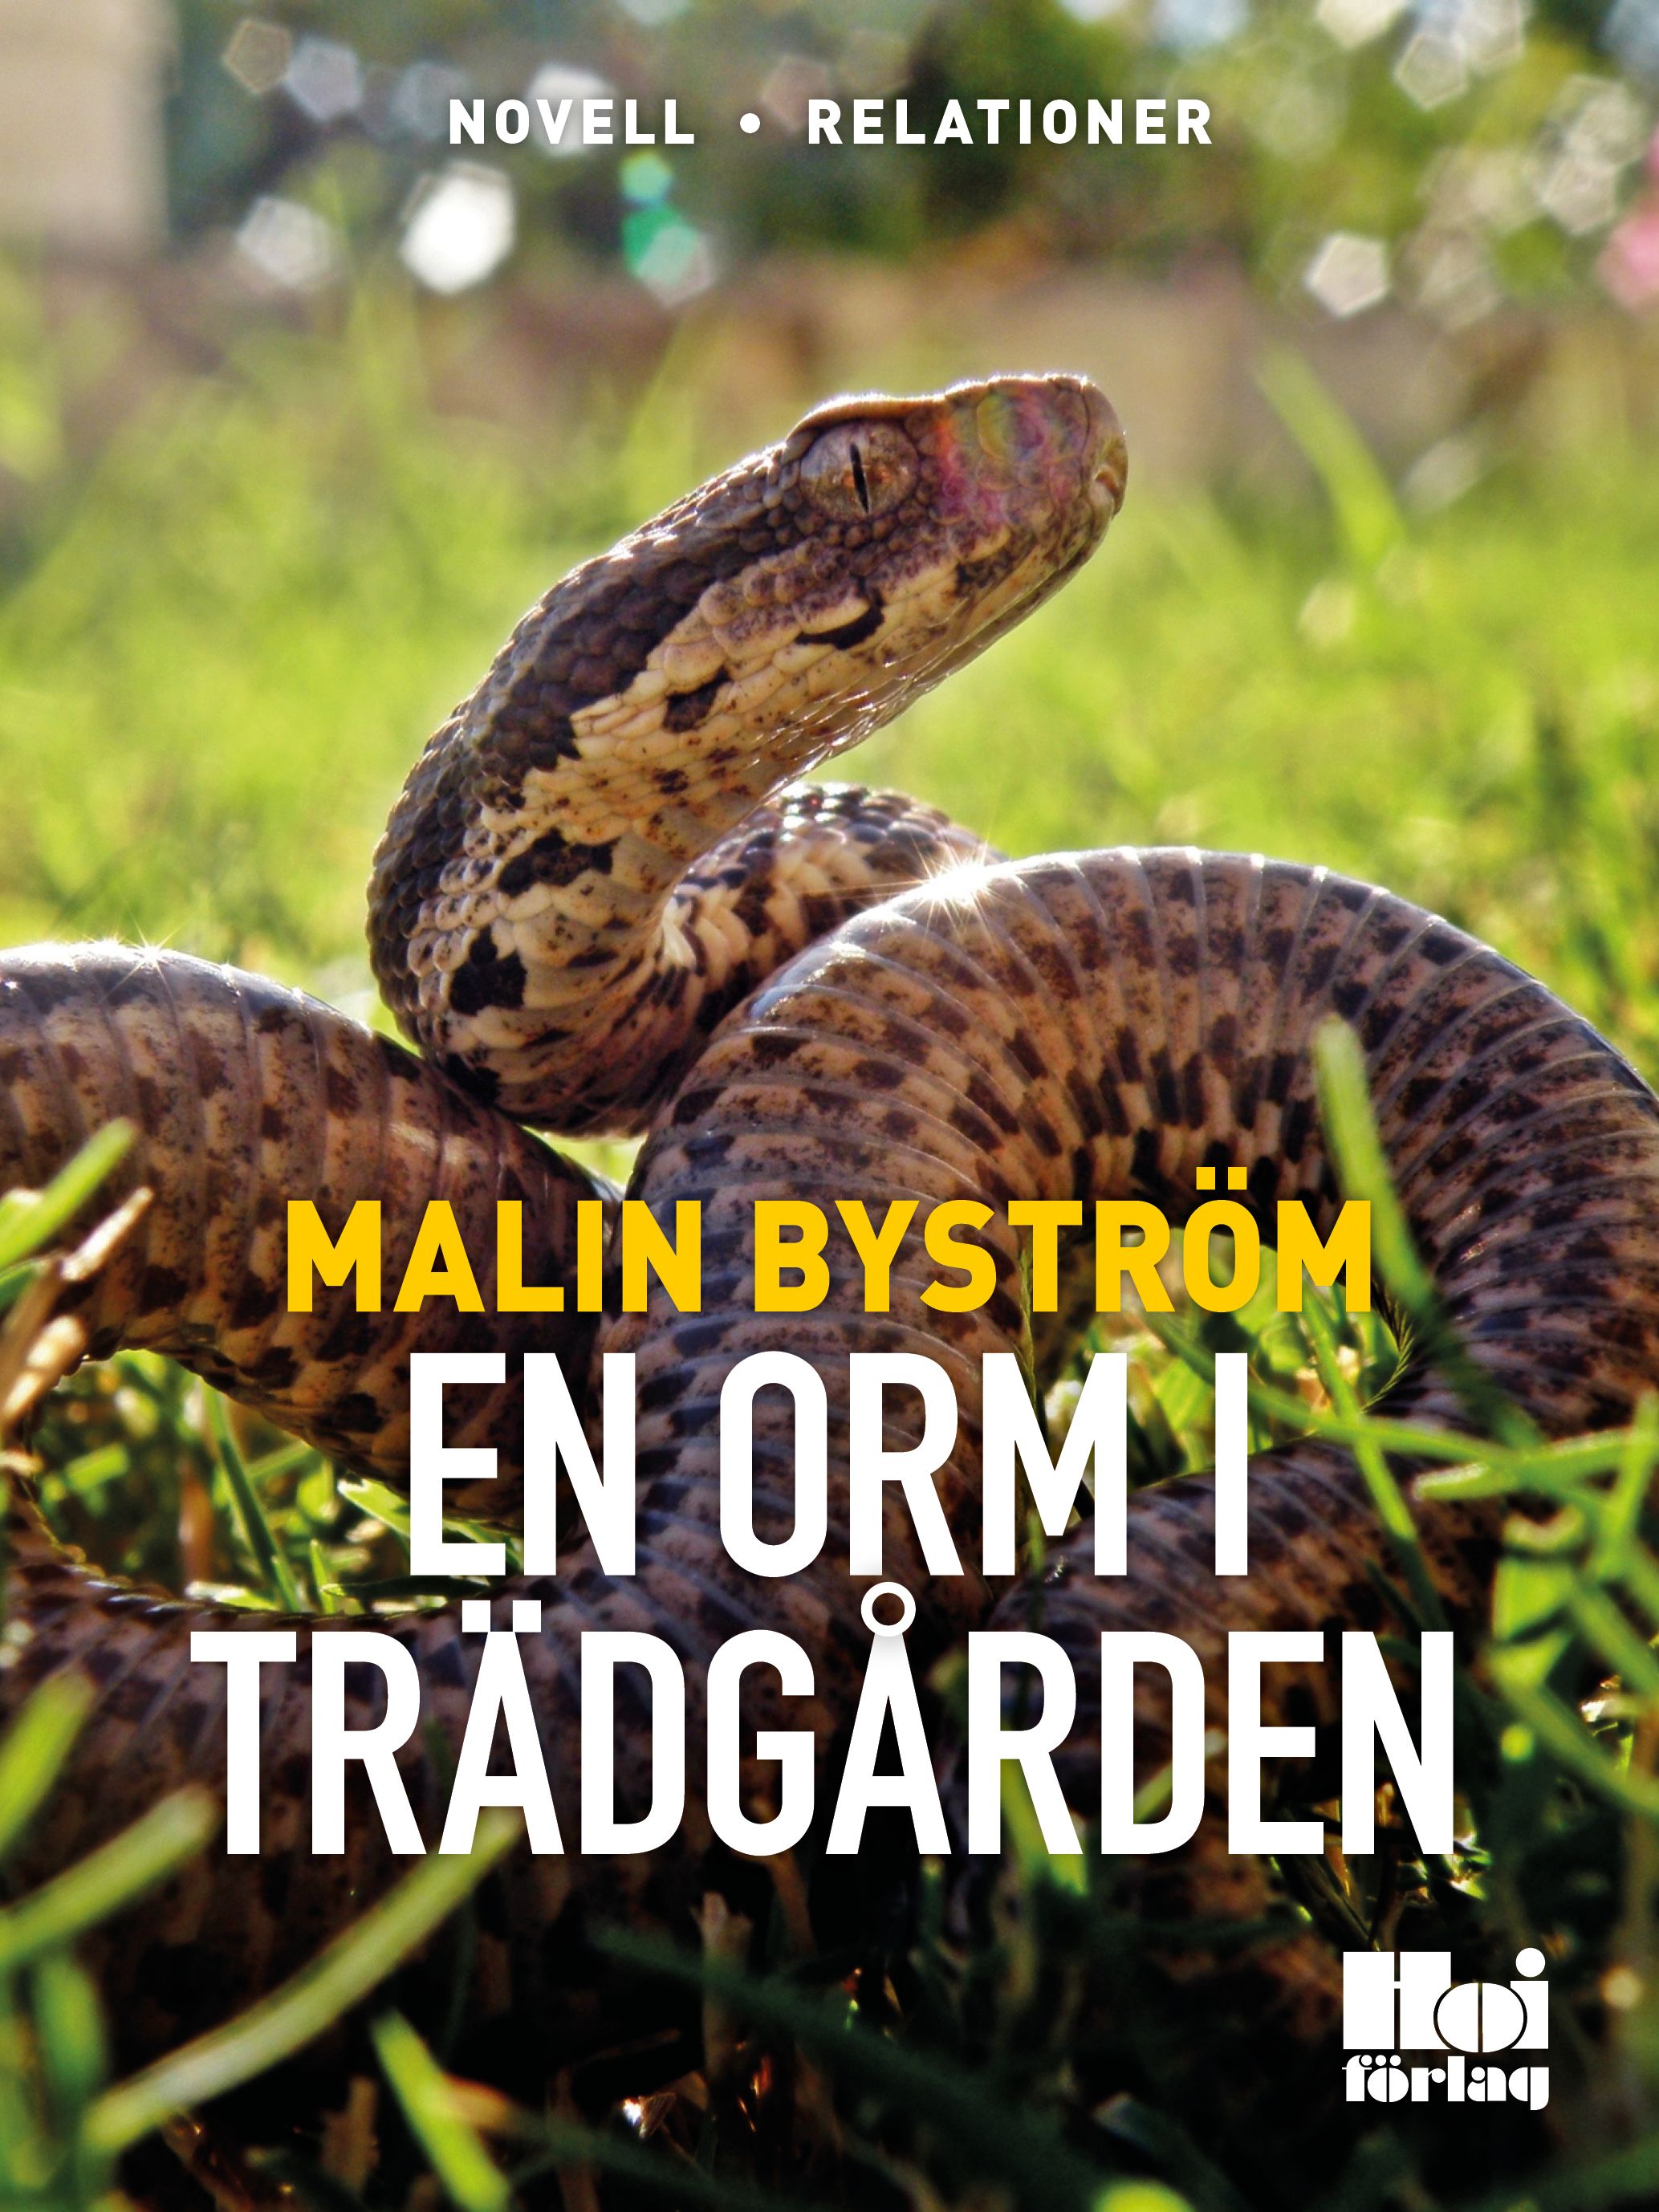 En orm i trädgården, e-bok av Malin Byström